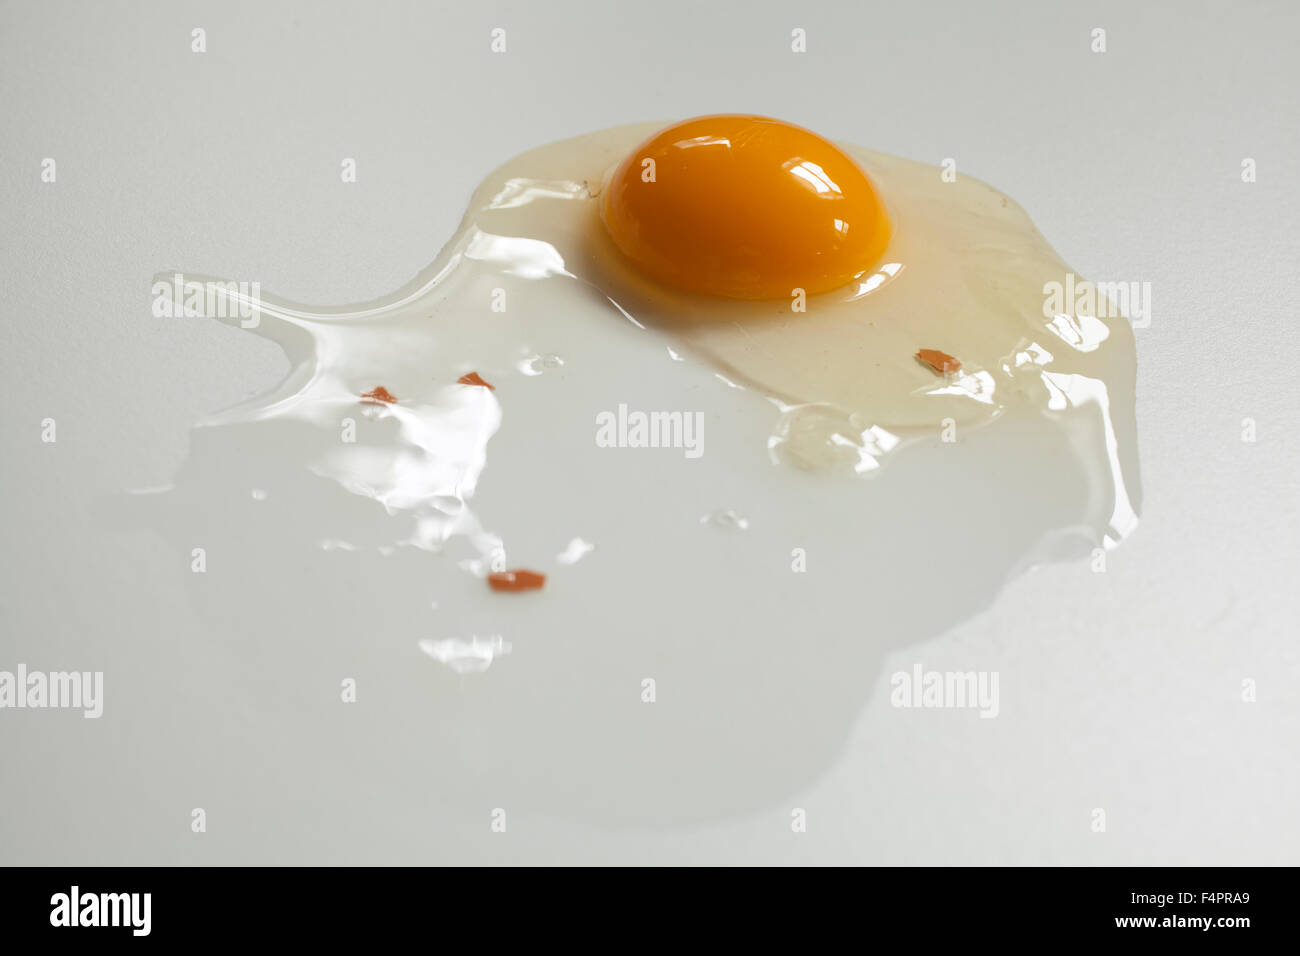 Rotture di greggio uovo marrone su sfondo bianco con piccoli frammenti di guscio. Foto Stock